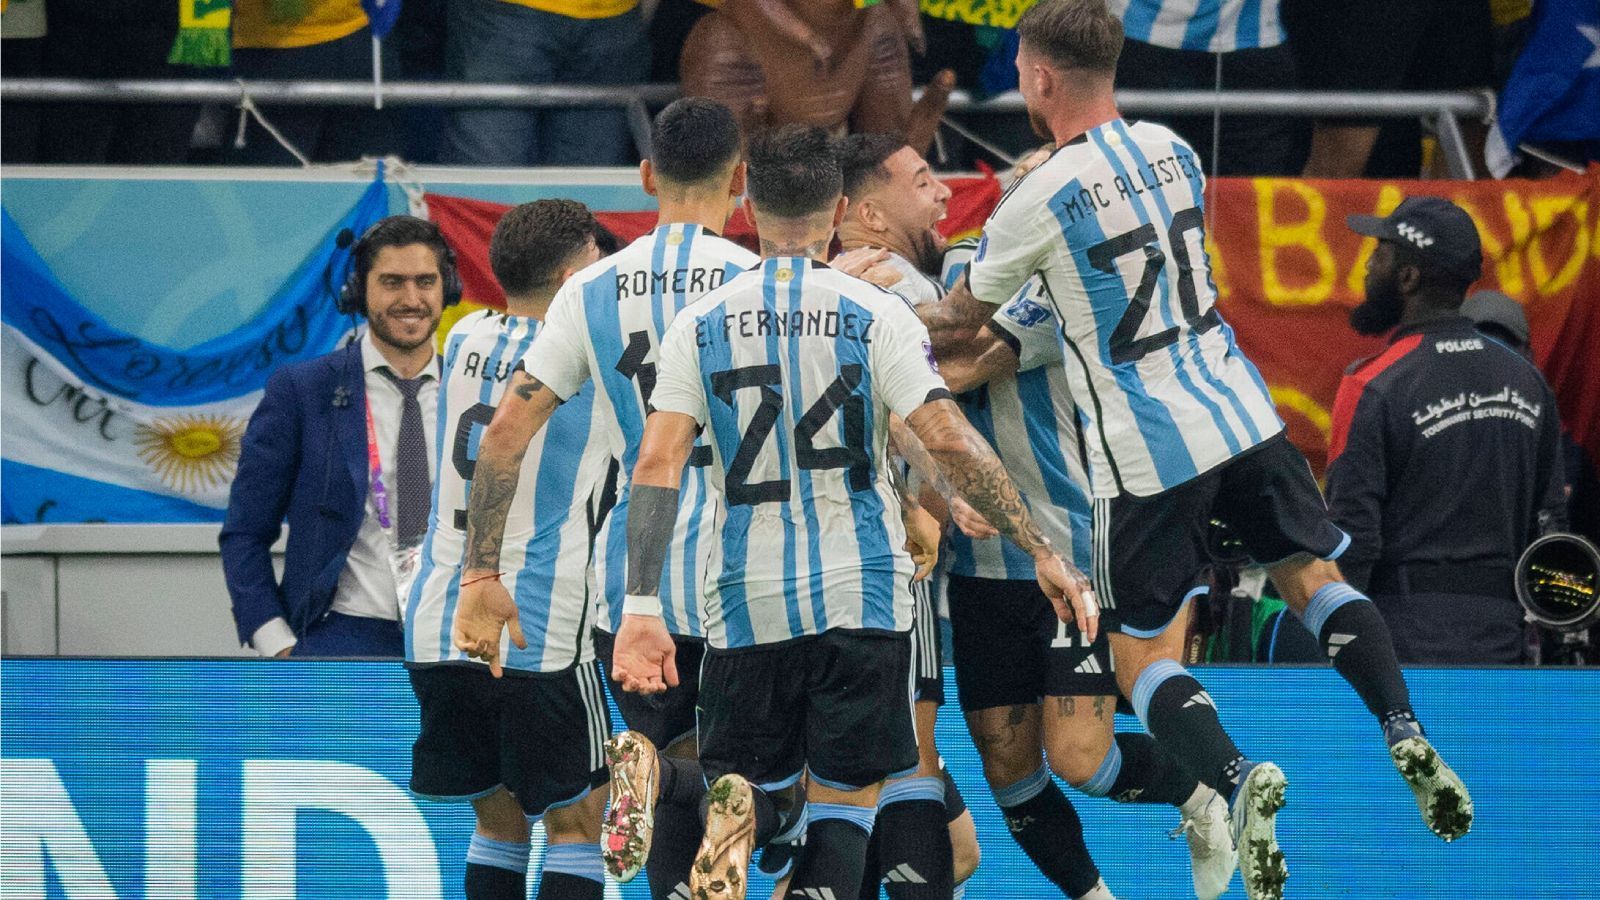 
                <strong>Platz 4: Argentinien</strong><br>
                Es war ein Schock sondergleichen für Argentinien. Zum Auftakt der Gruppe C verlor die "Albiceleste" völlig unerwartet und mit viel Abseits-Pech mit 1:2 gegen Saudi-Arabien. Als man schon dachte, der WM-Traum eines Favoriten würde platzen, spielte das Team von Lionel Scaloni die letzten beiden Gruppenspiele mit jeweils zwei 2:0-Siegen gegen Polen und Mexiko souverän runter. Im Achtelfinale wehrte sich Australien zwar nach Kräften, war den Argentiniern jedoch am Ende ebenfalls nicht gewachsen (2:1). Was in der Gruppenphase war, zählt nicht mehr. Und die letzten Auftritte von Messi und Co. erinnern an das Team, das 2021 die Copa America gewann. Gegen die Niederlande haben die Argentinier jedoch die härteste Nuss bisher zu knacken.
              